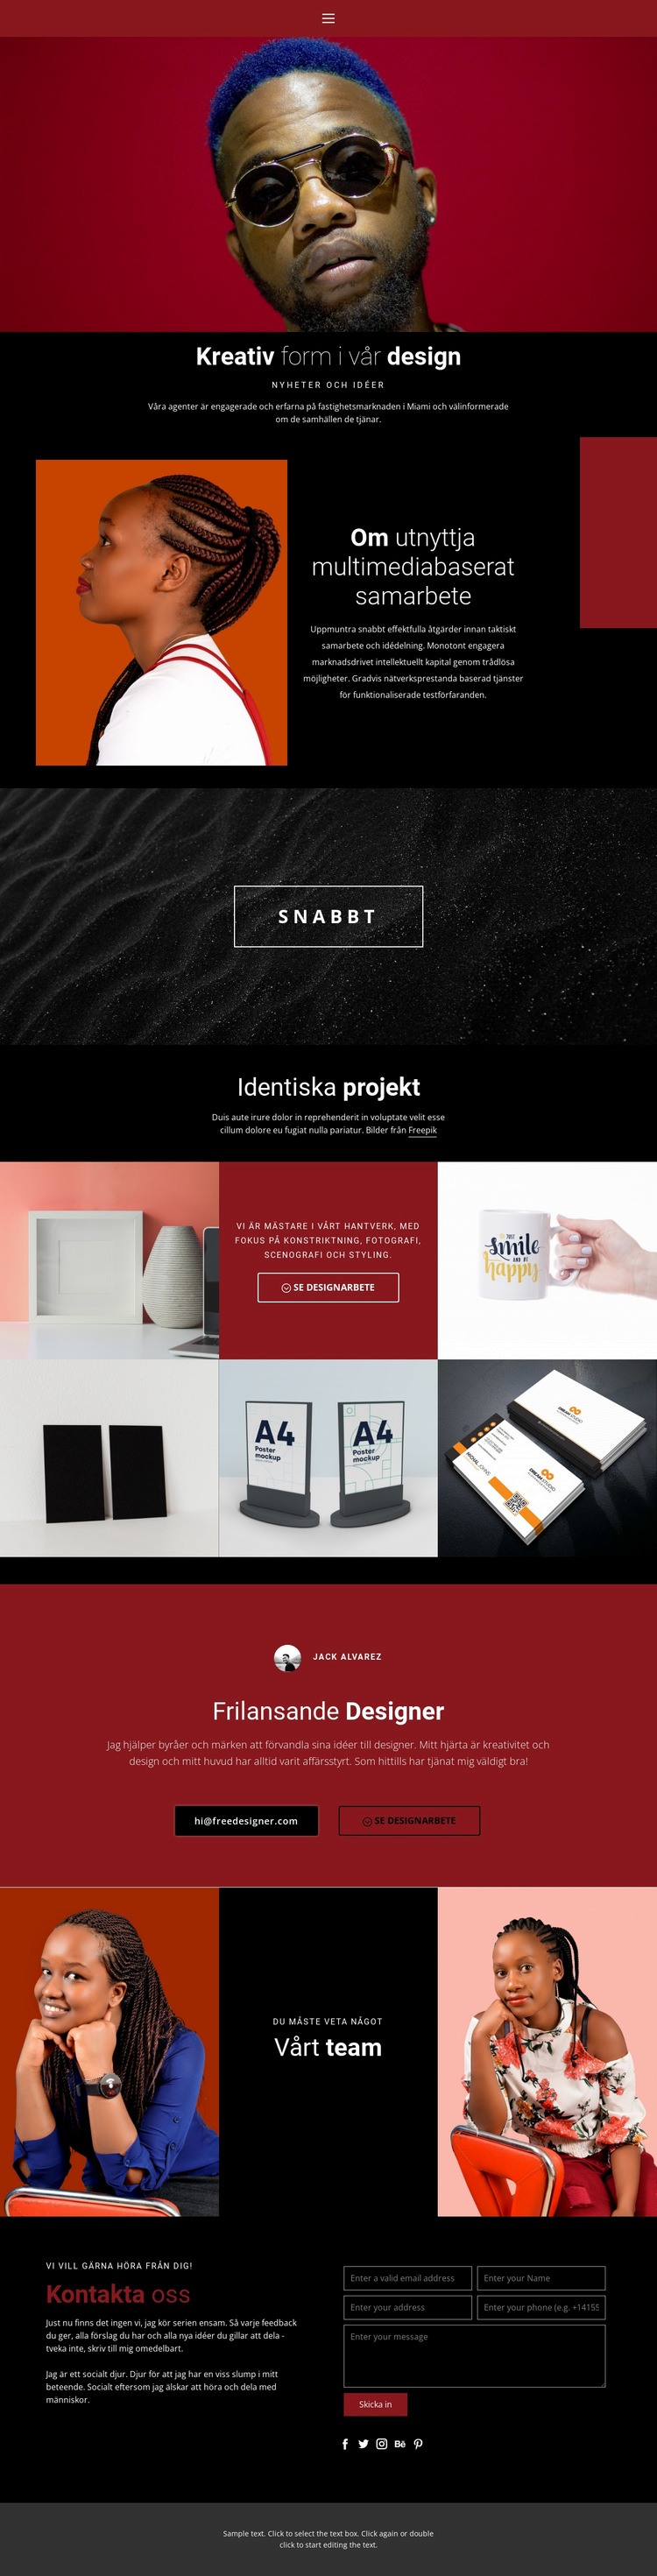 Kreativ form i design Webbplats mall